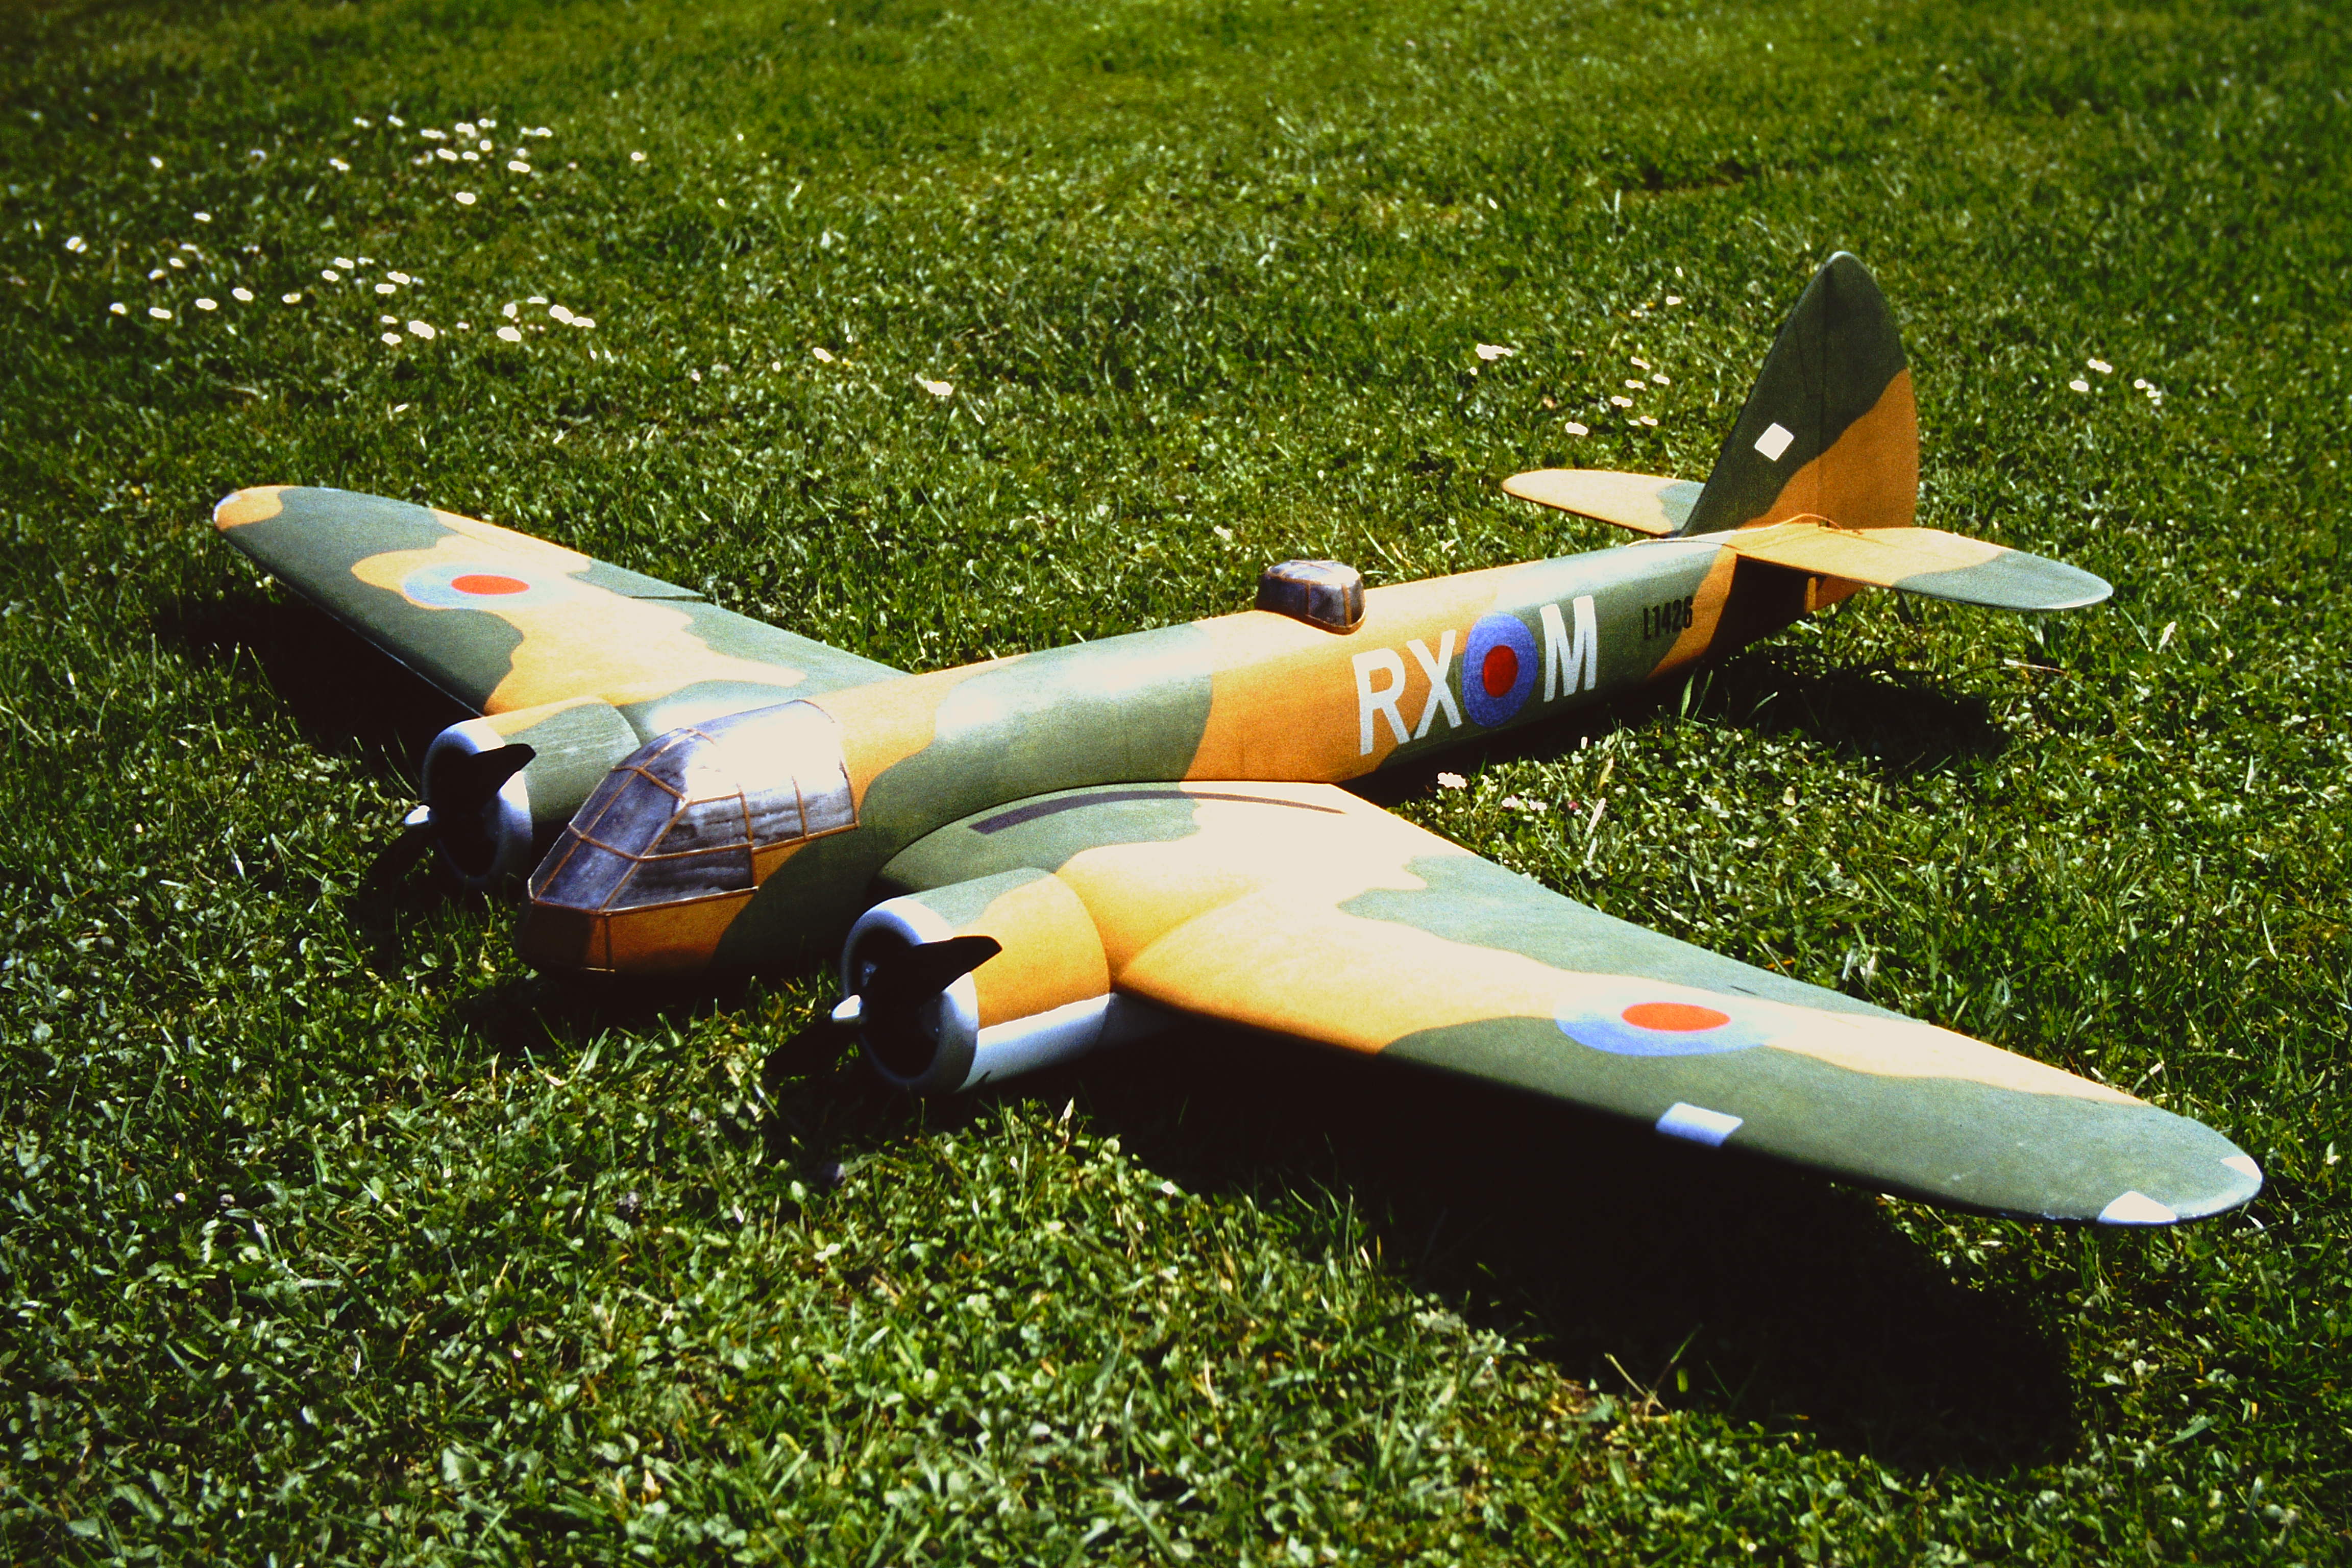 Bristol Blenheim RC-Modell.jpg